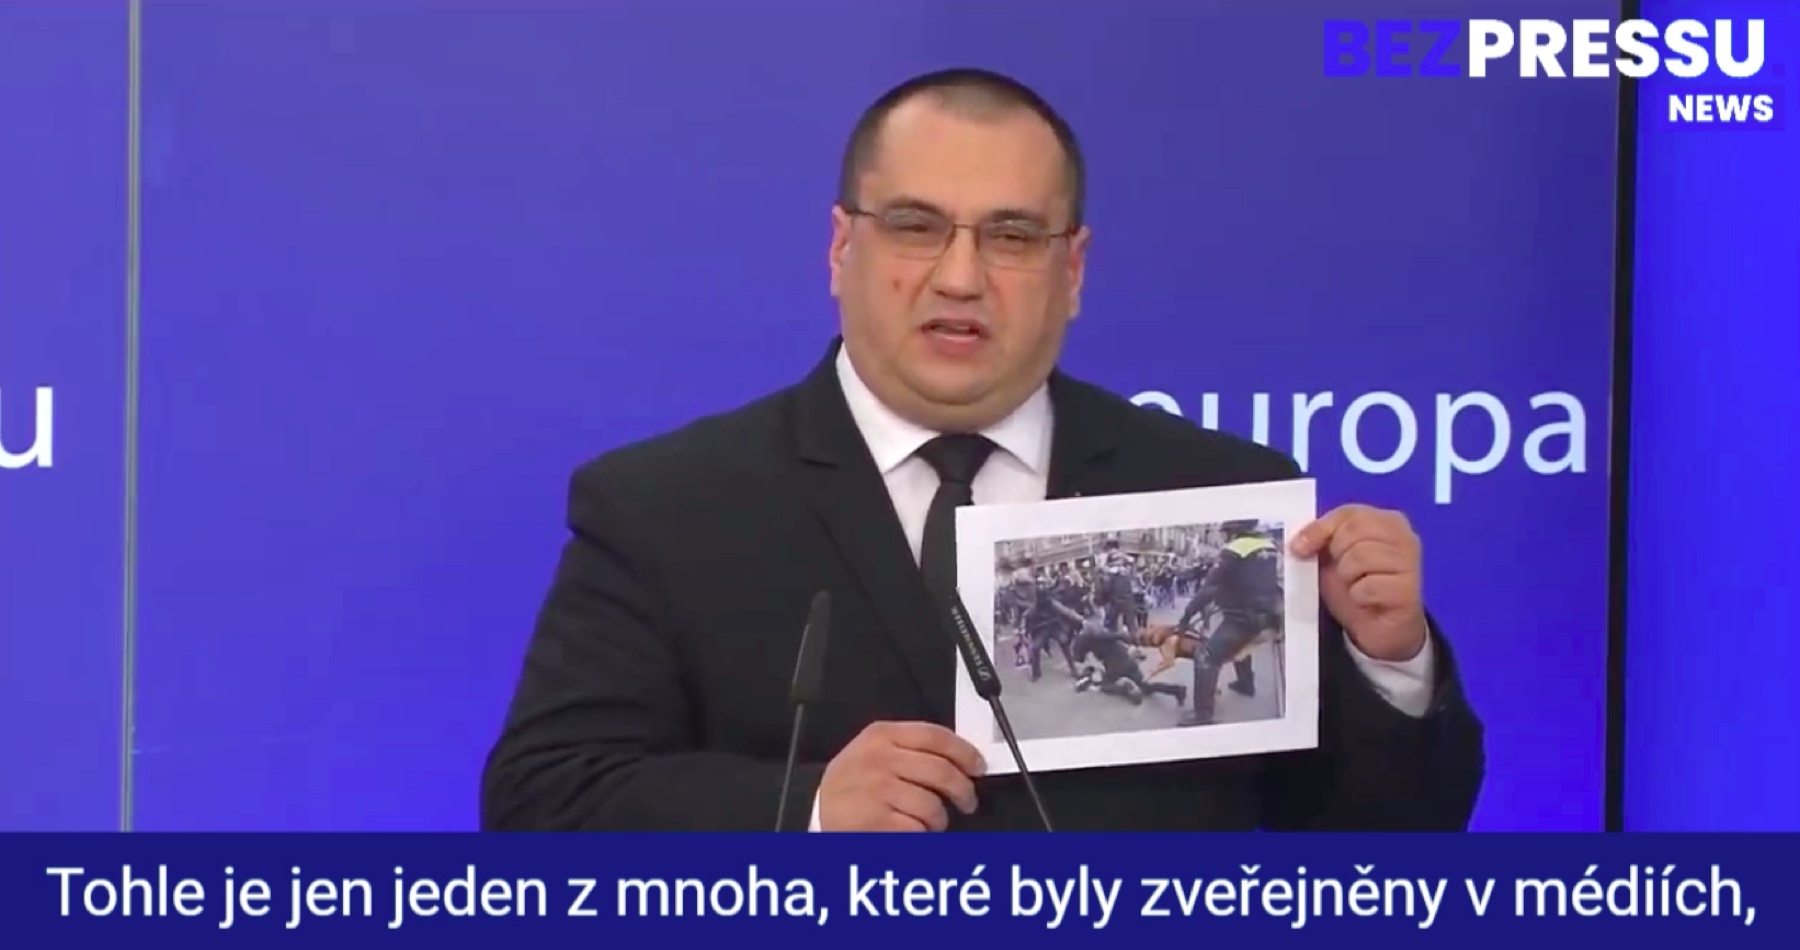 VIDEO: Rumunský europoslanec Cristian Terheș promluvil o šokujících brutálních praktikách policejních složek při protestech v Evropě, kterých se sám zúčastnil: „Pod vedením Ursuly von der Leyen EU přechází od demokracie k tyranii!“